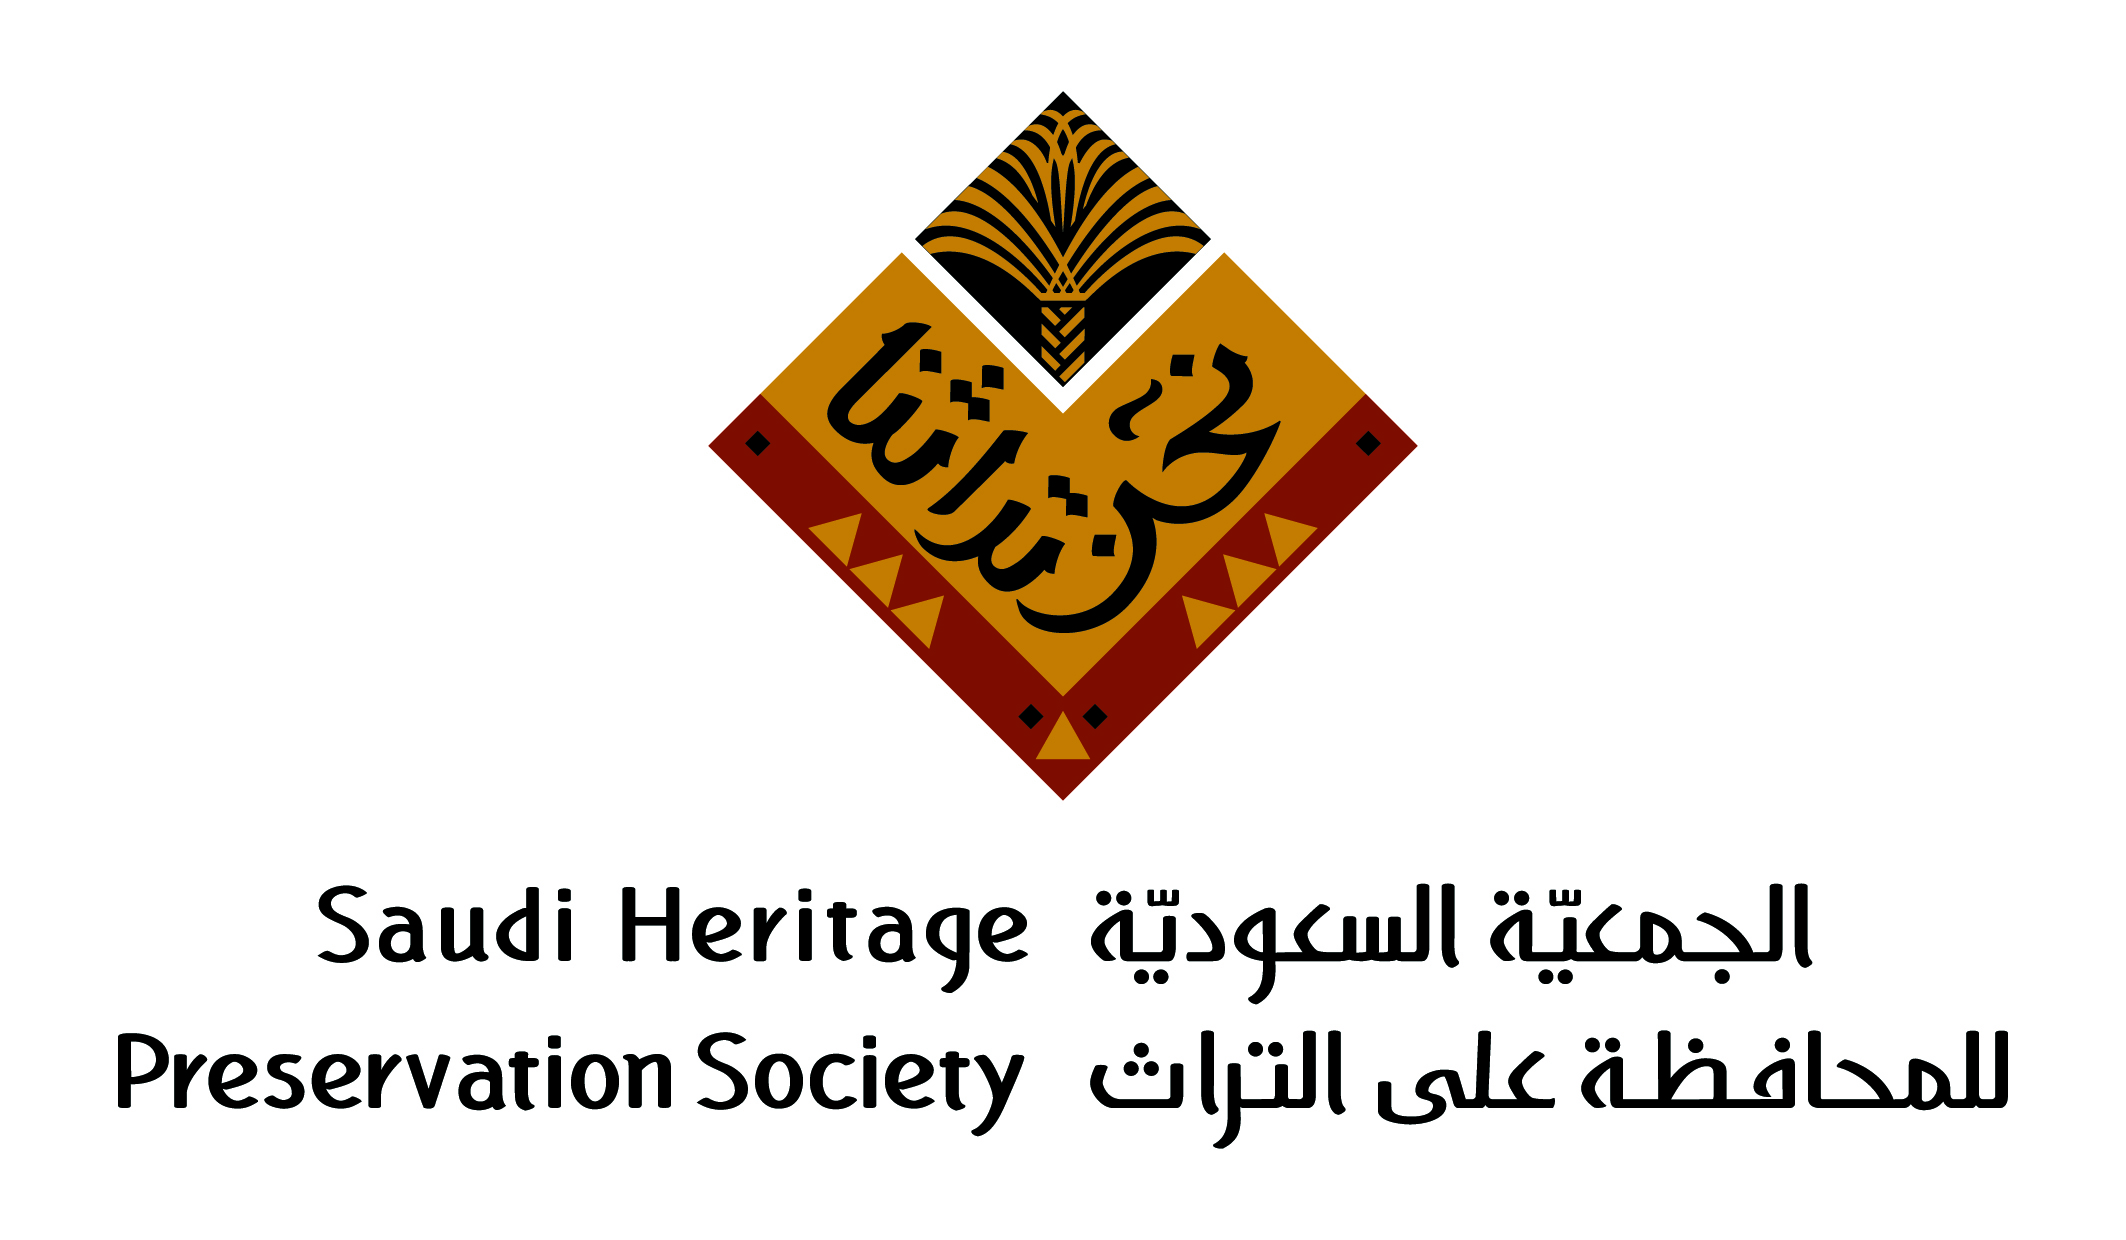 Saudi Heritage Preservation Society